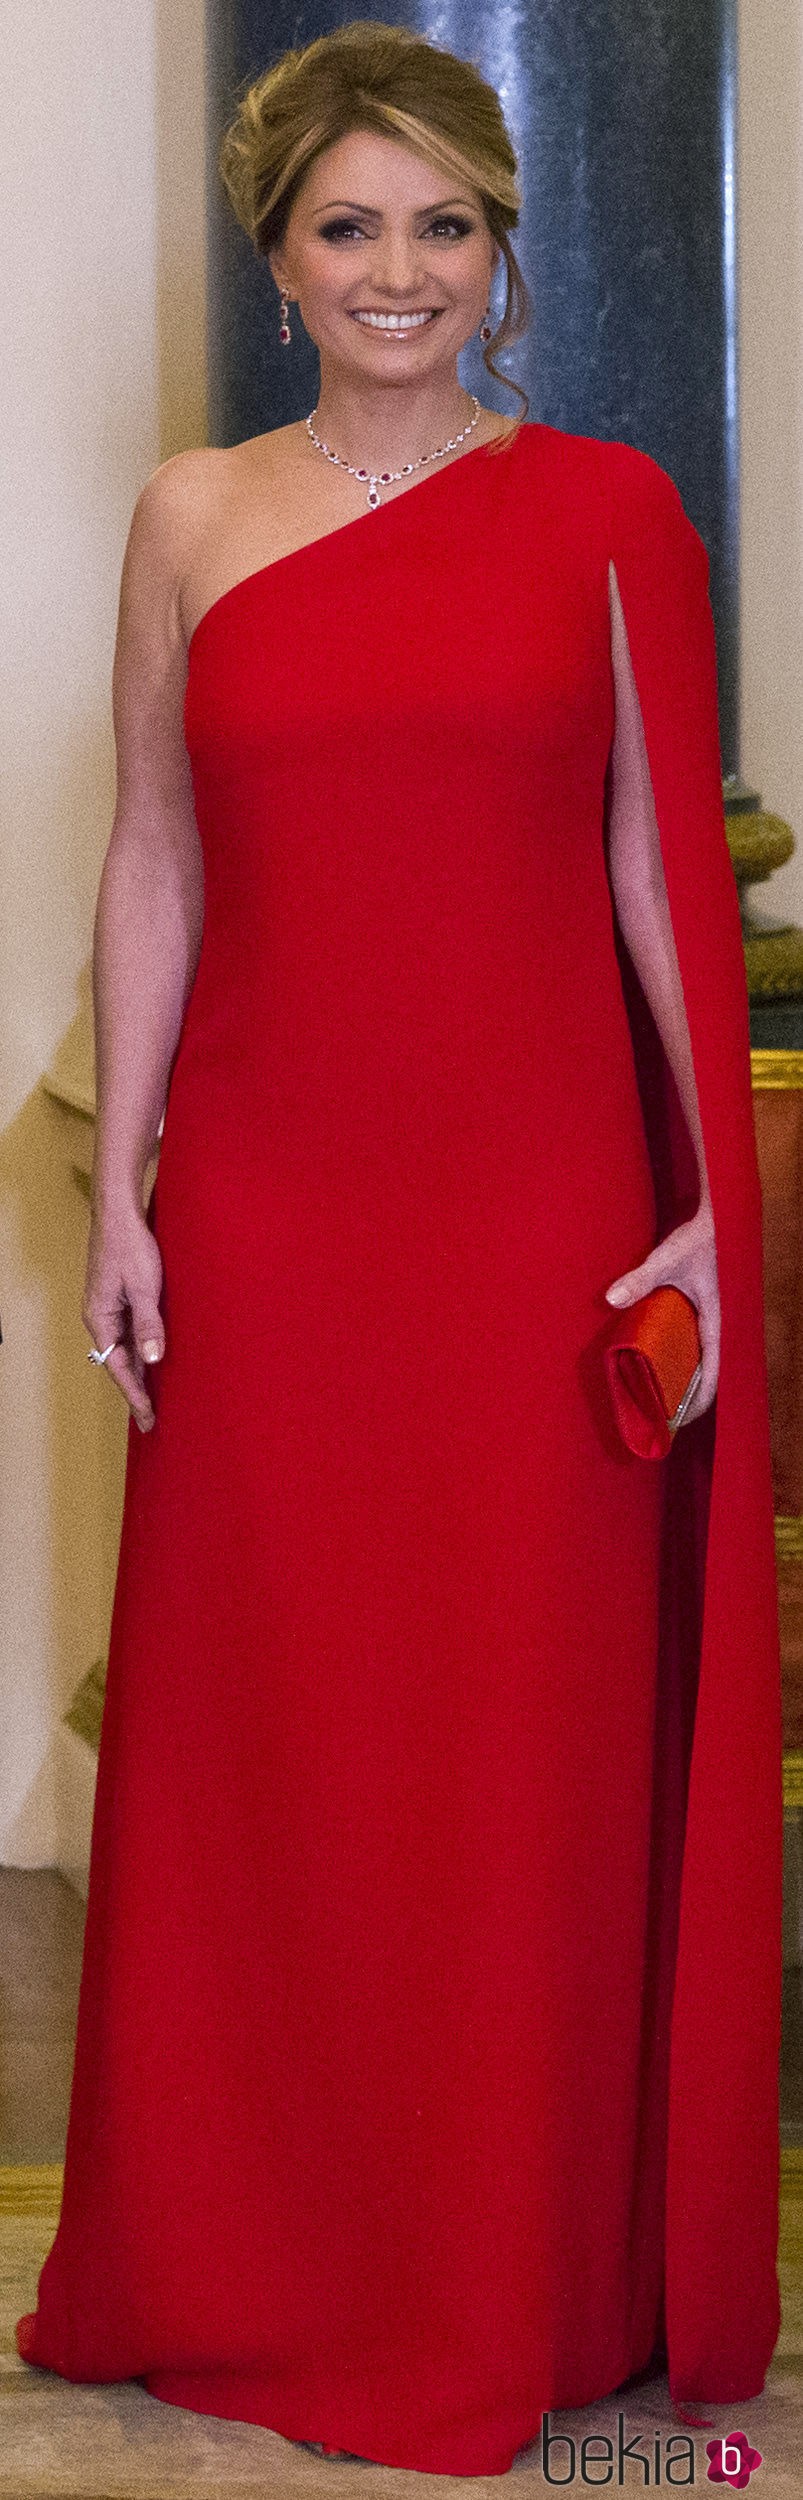 Angélica Rivera durante una al Palacio de Buckingham